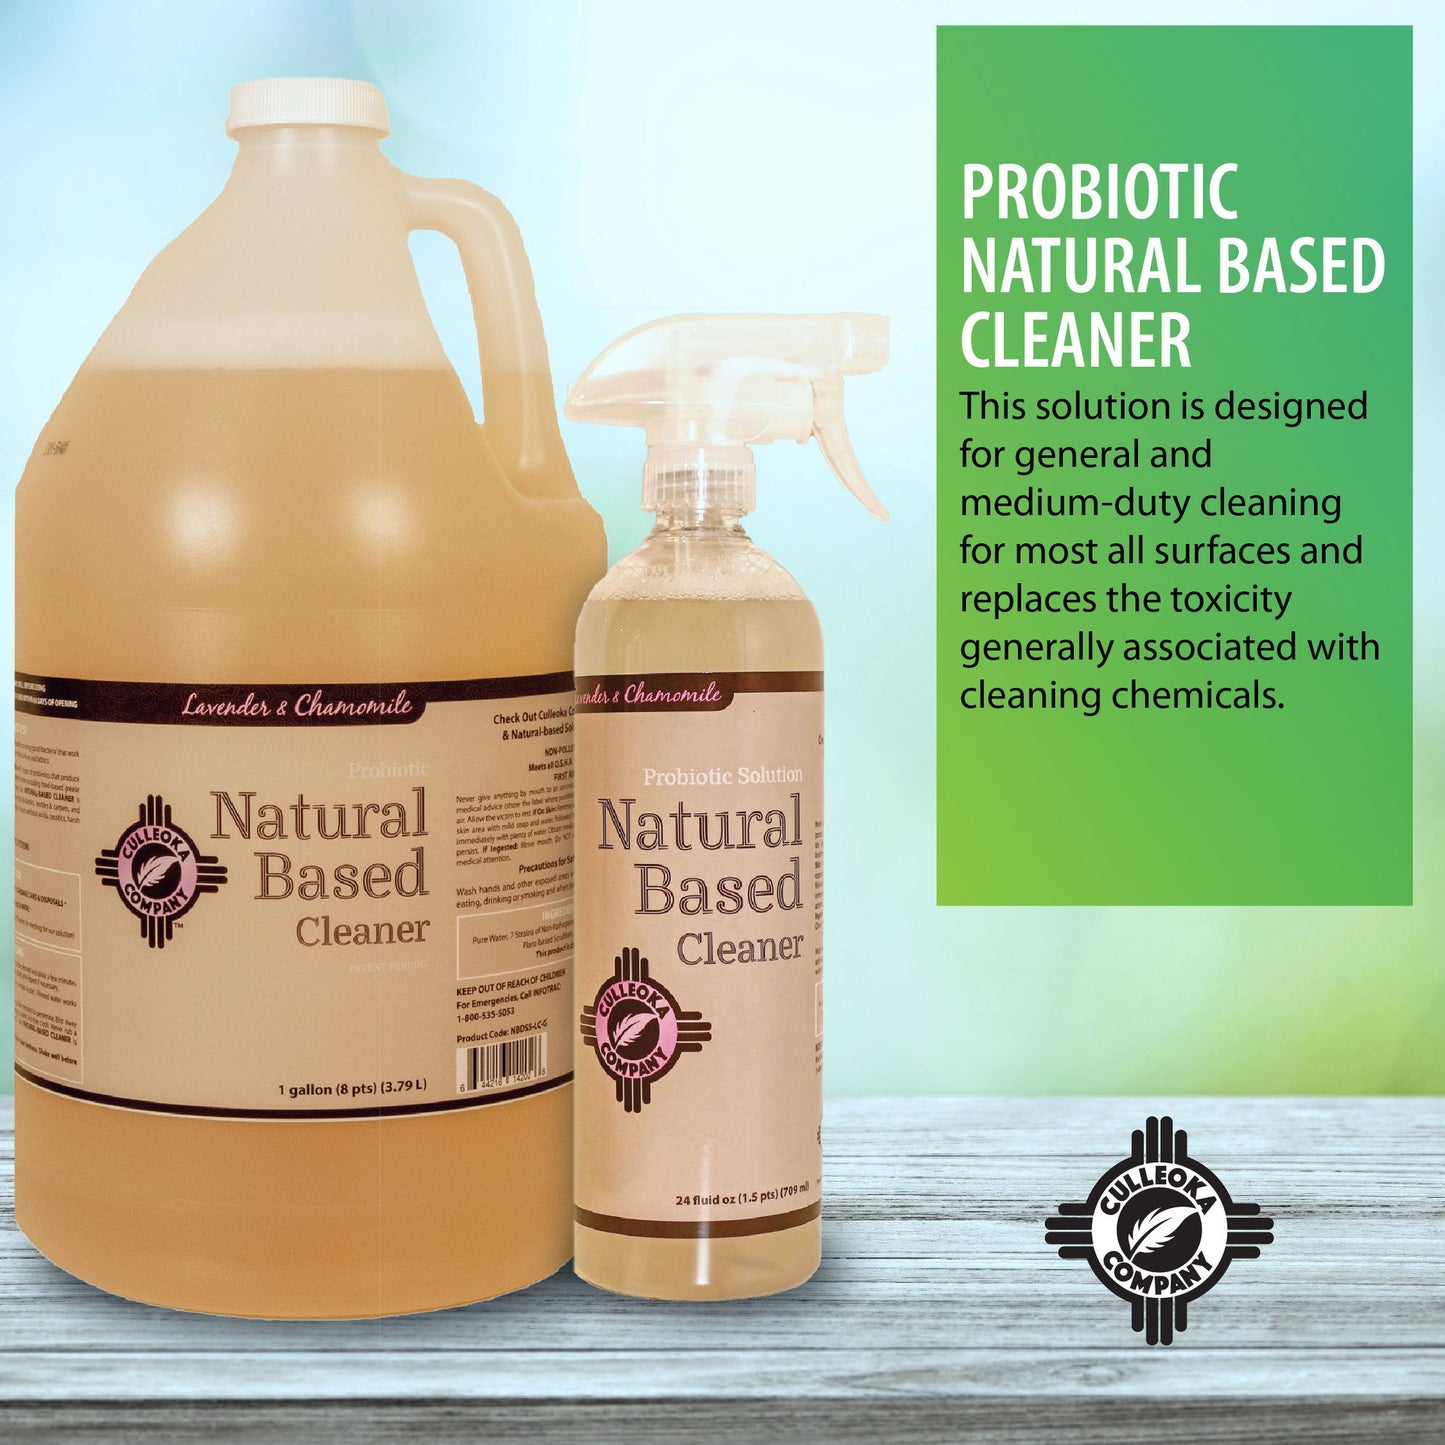 Probiotic natural based Cleaner